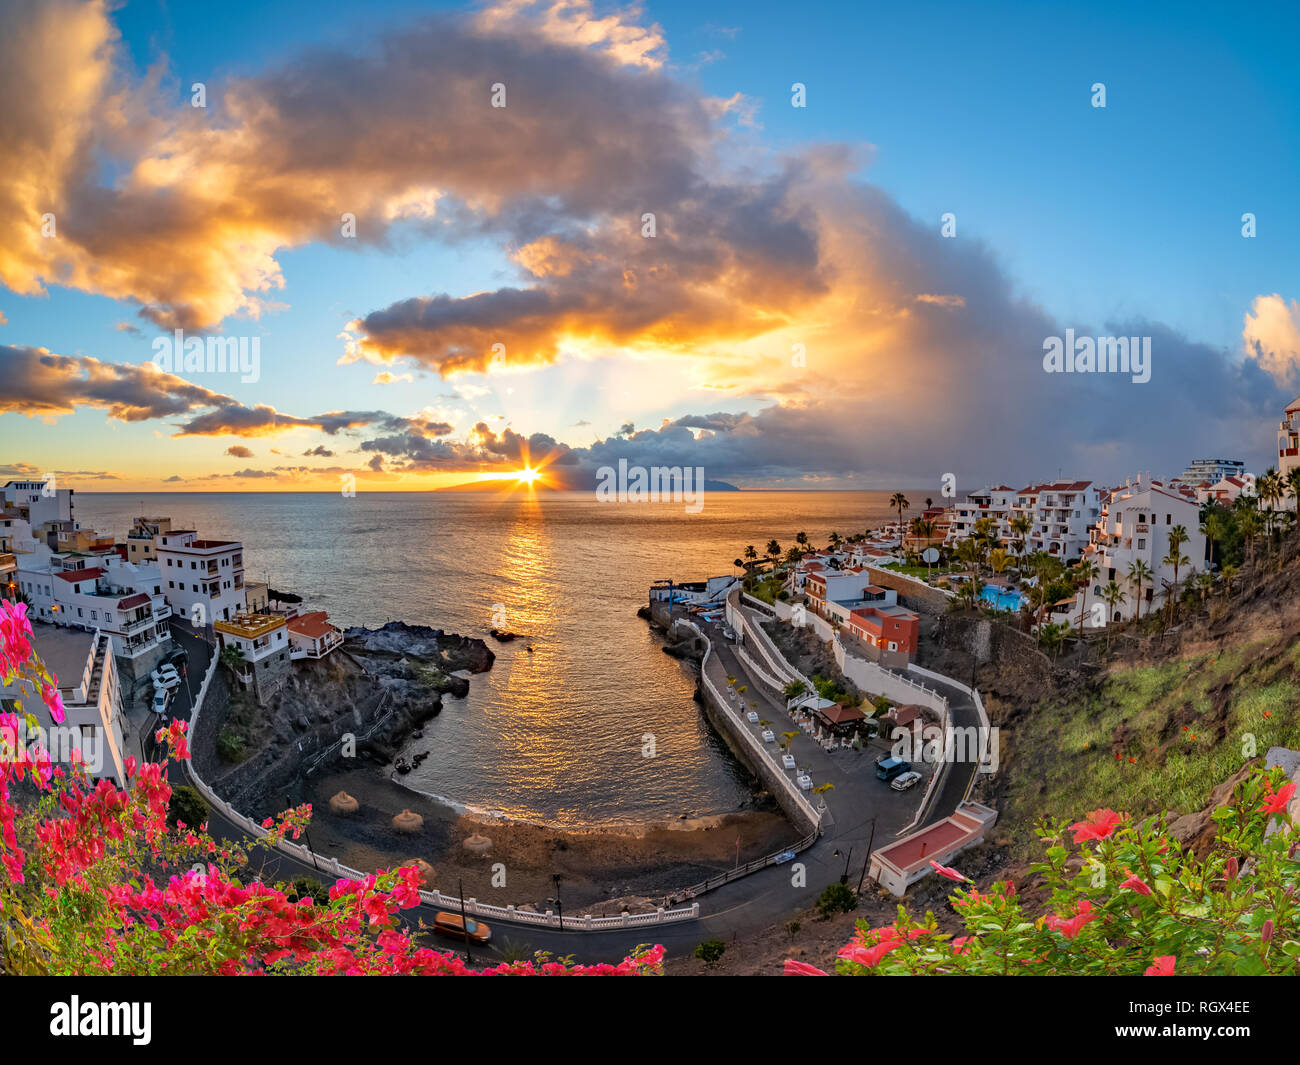 Amanecer en Puerto de Santiago, en la temporada de verano la ciudad de Tenerife, Islas Canarias, España Foto de stock